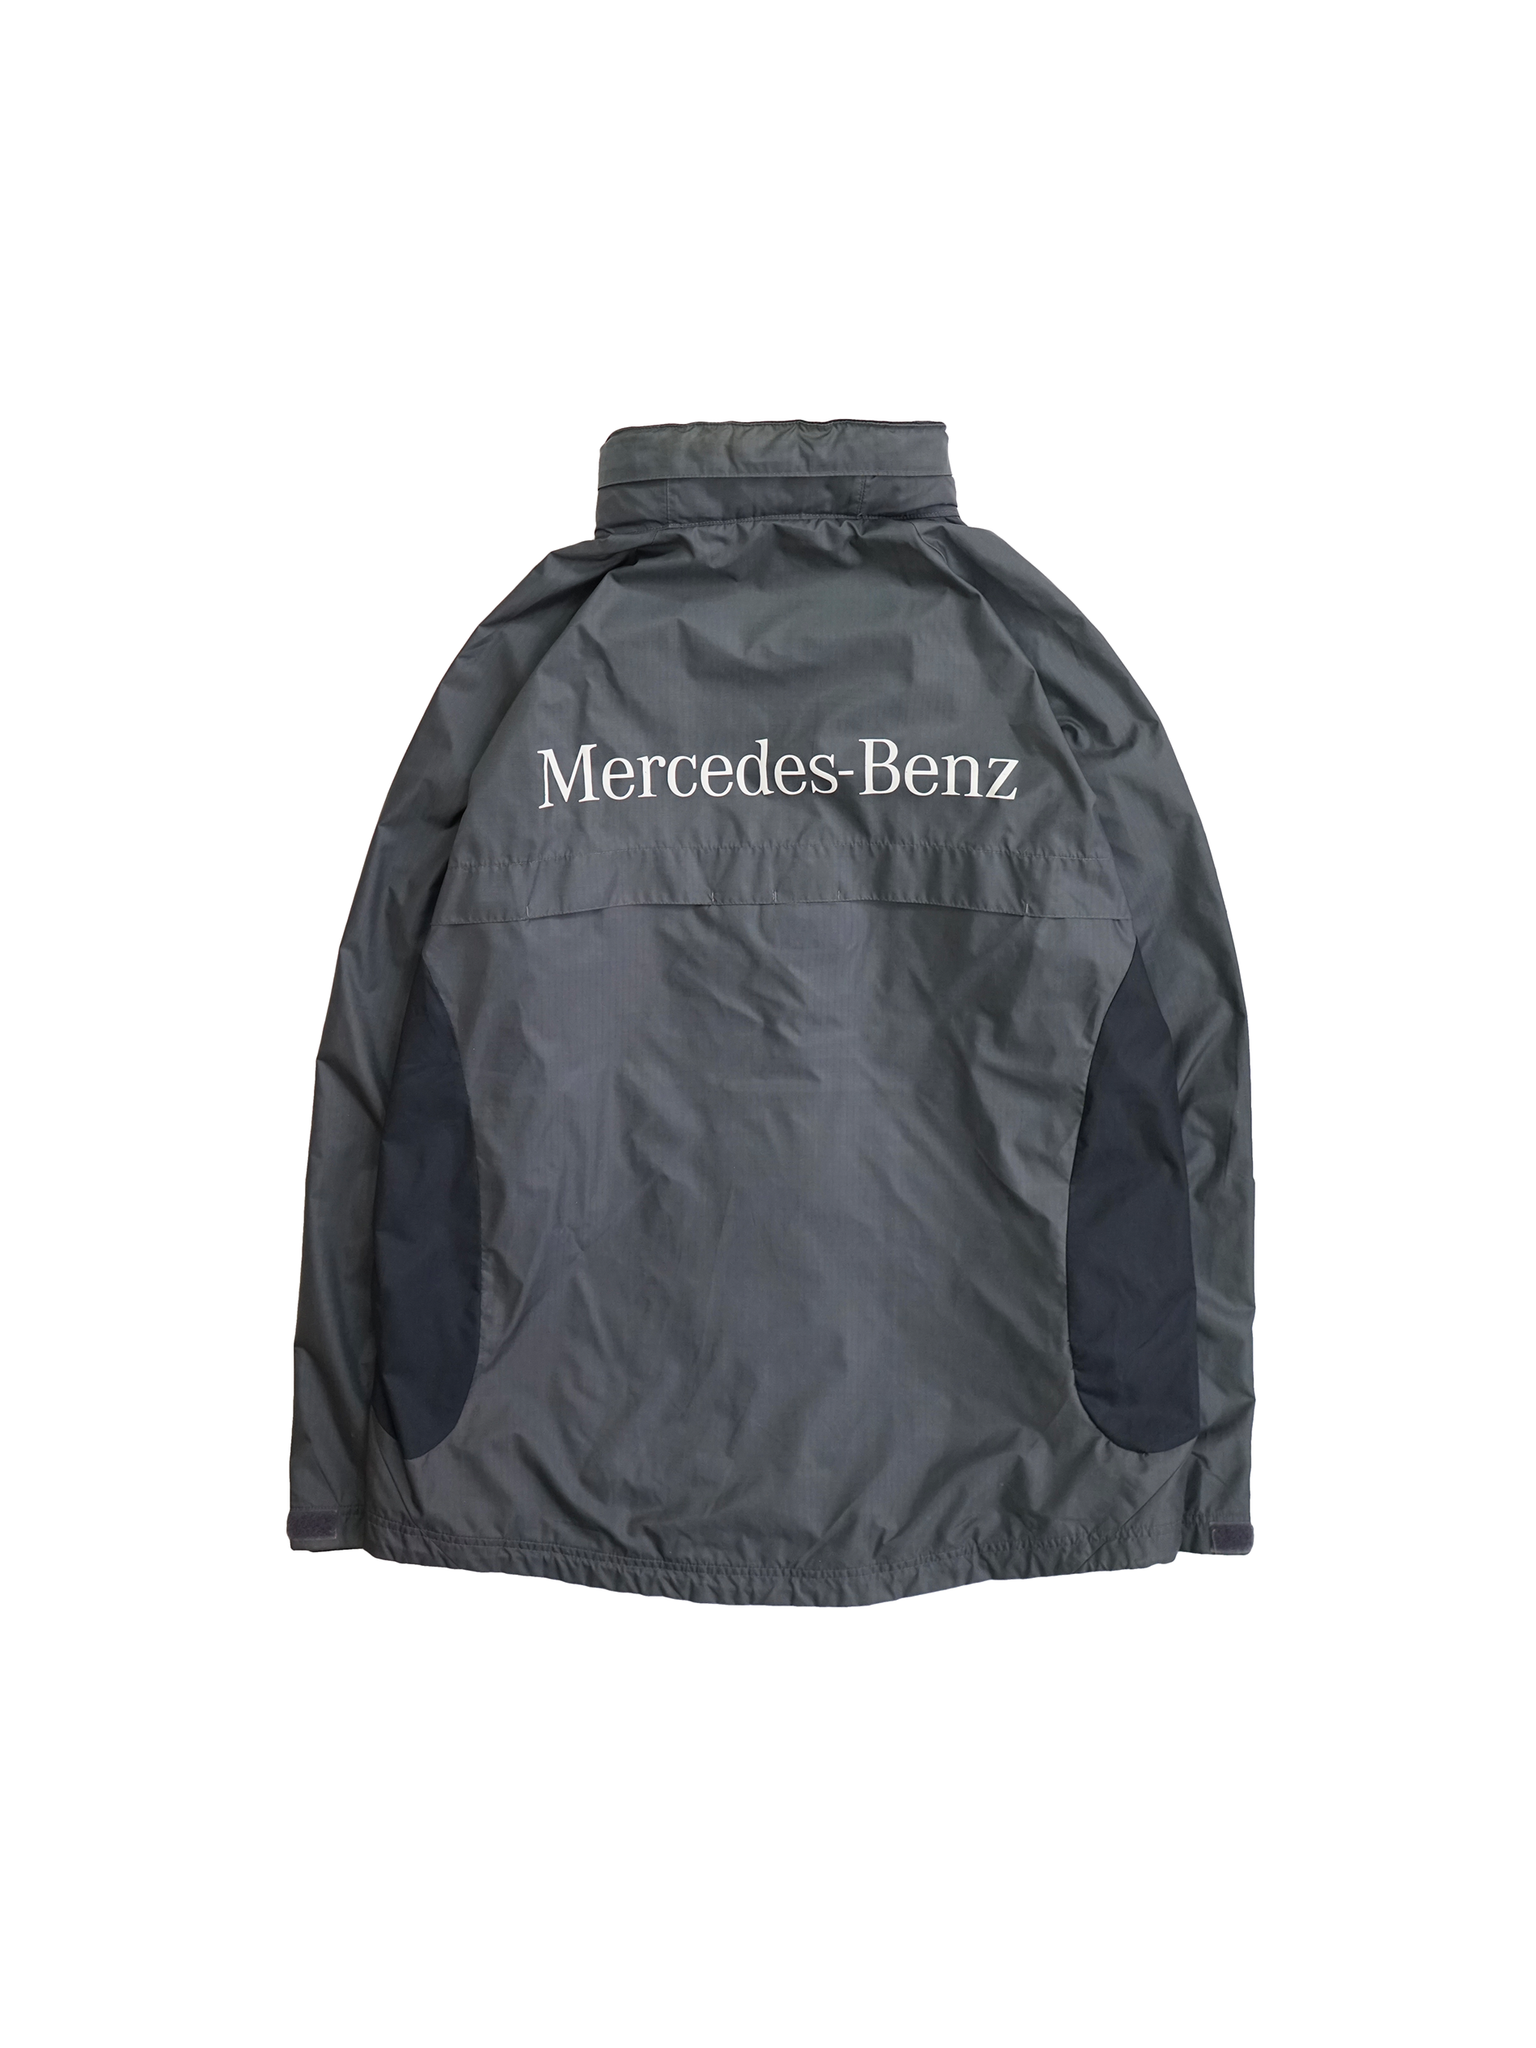 Mercedes-Benz nylon jacket